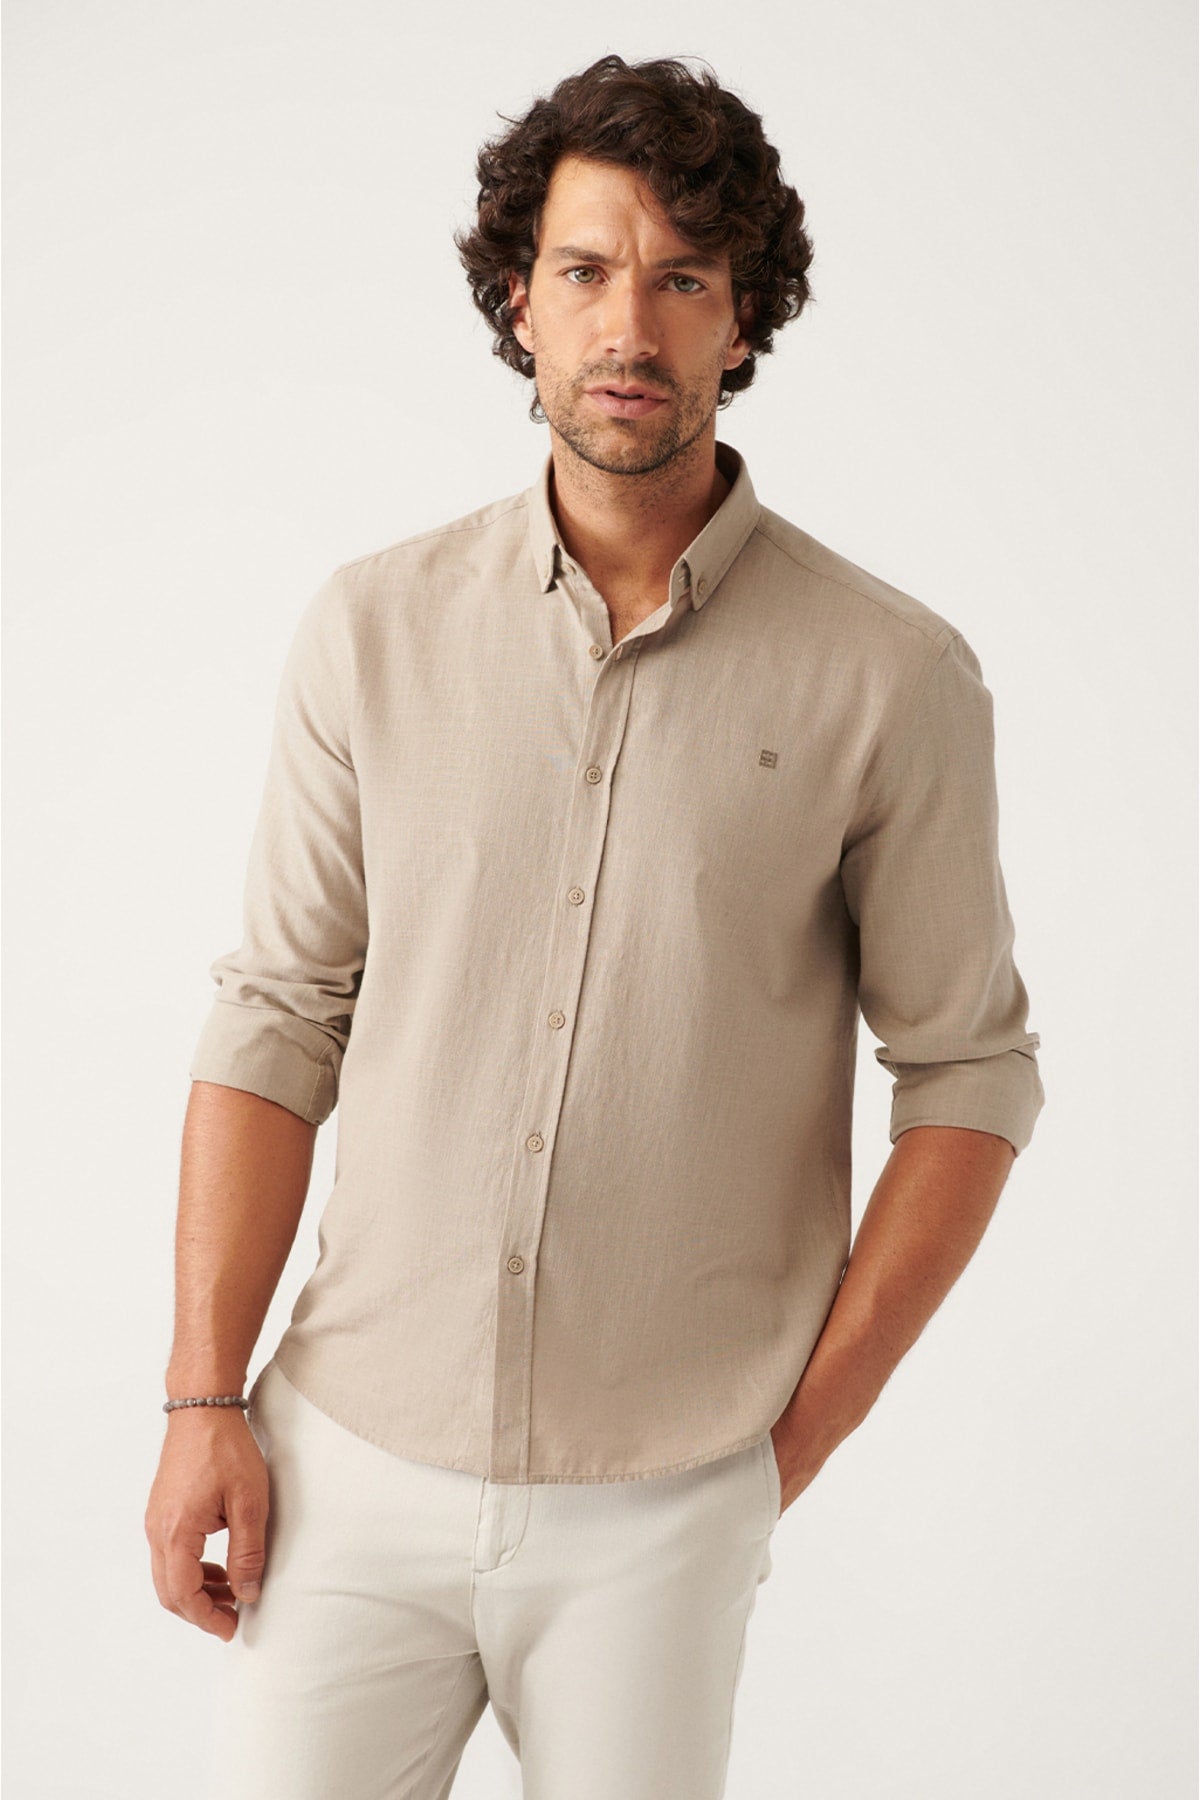 Mink buttoned collar comfort fit 100 %cotton linen textured shirt E002141